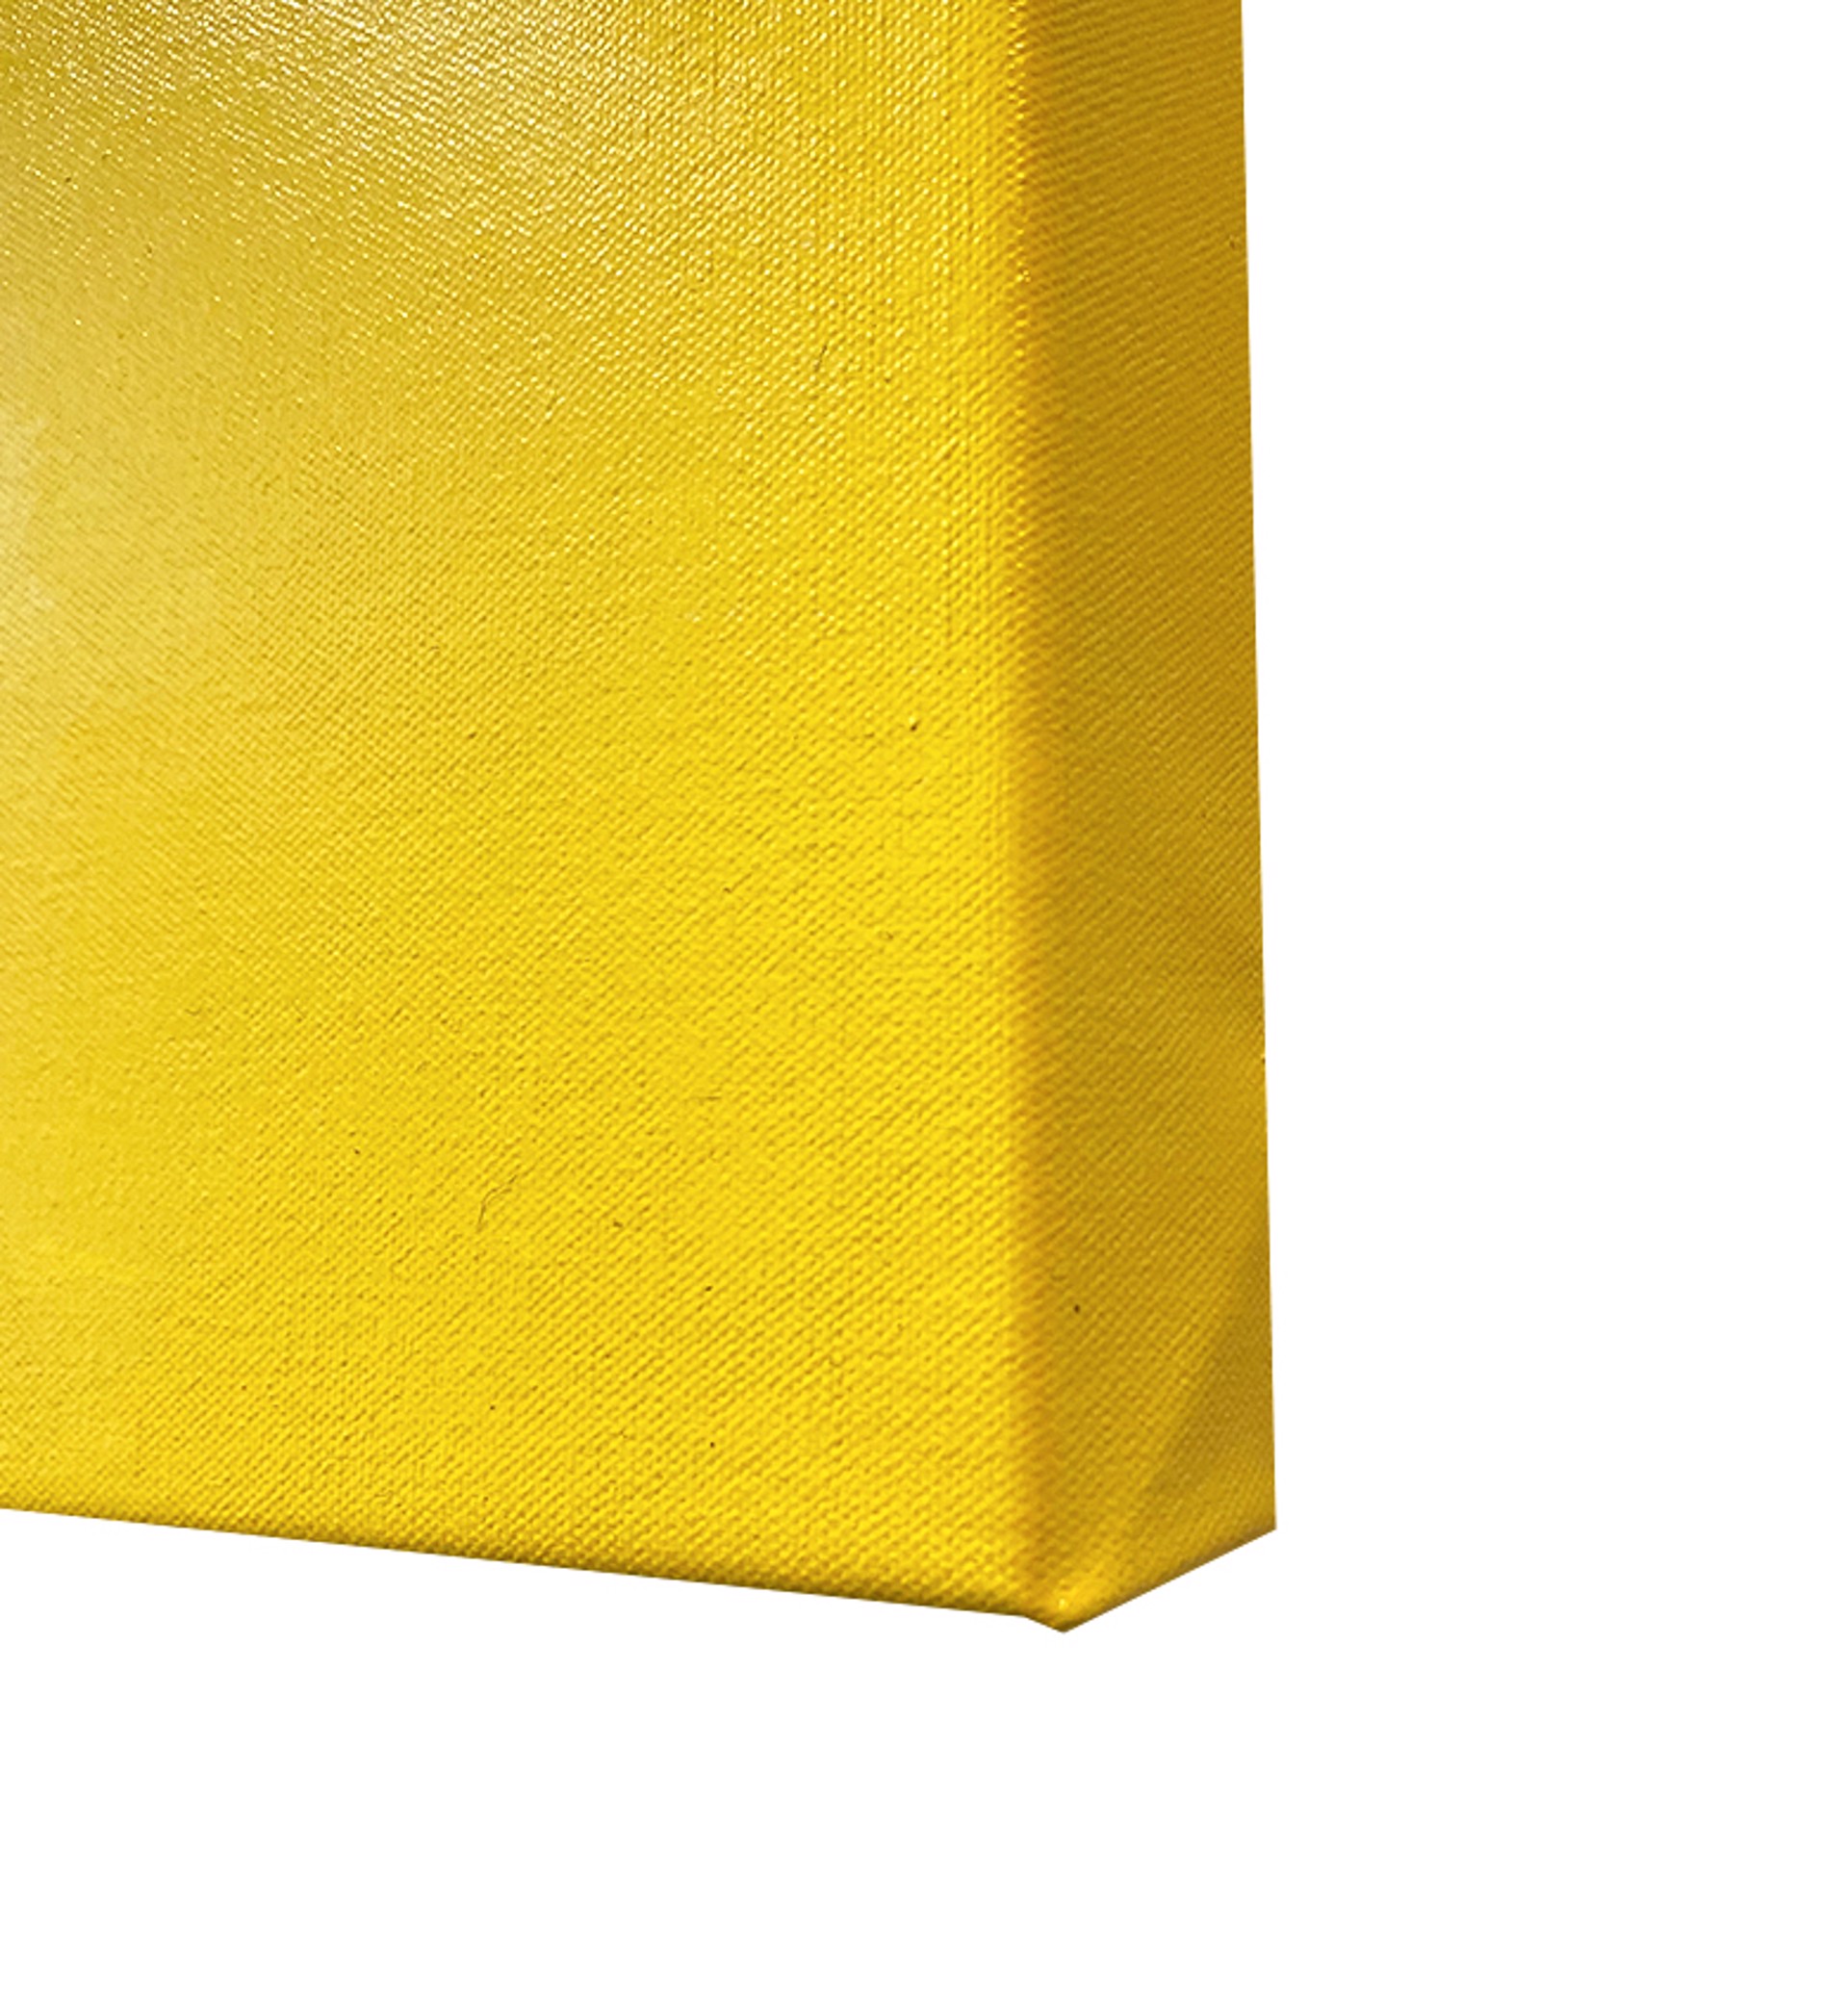 The Yellow Wallpaper by Carlos Gamez de Francisco